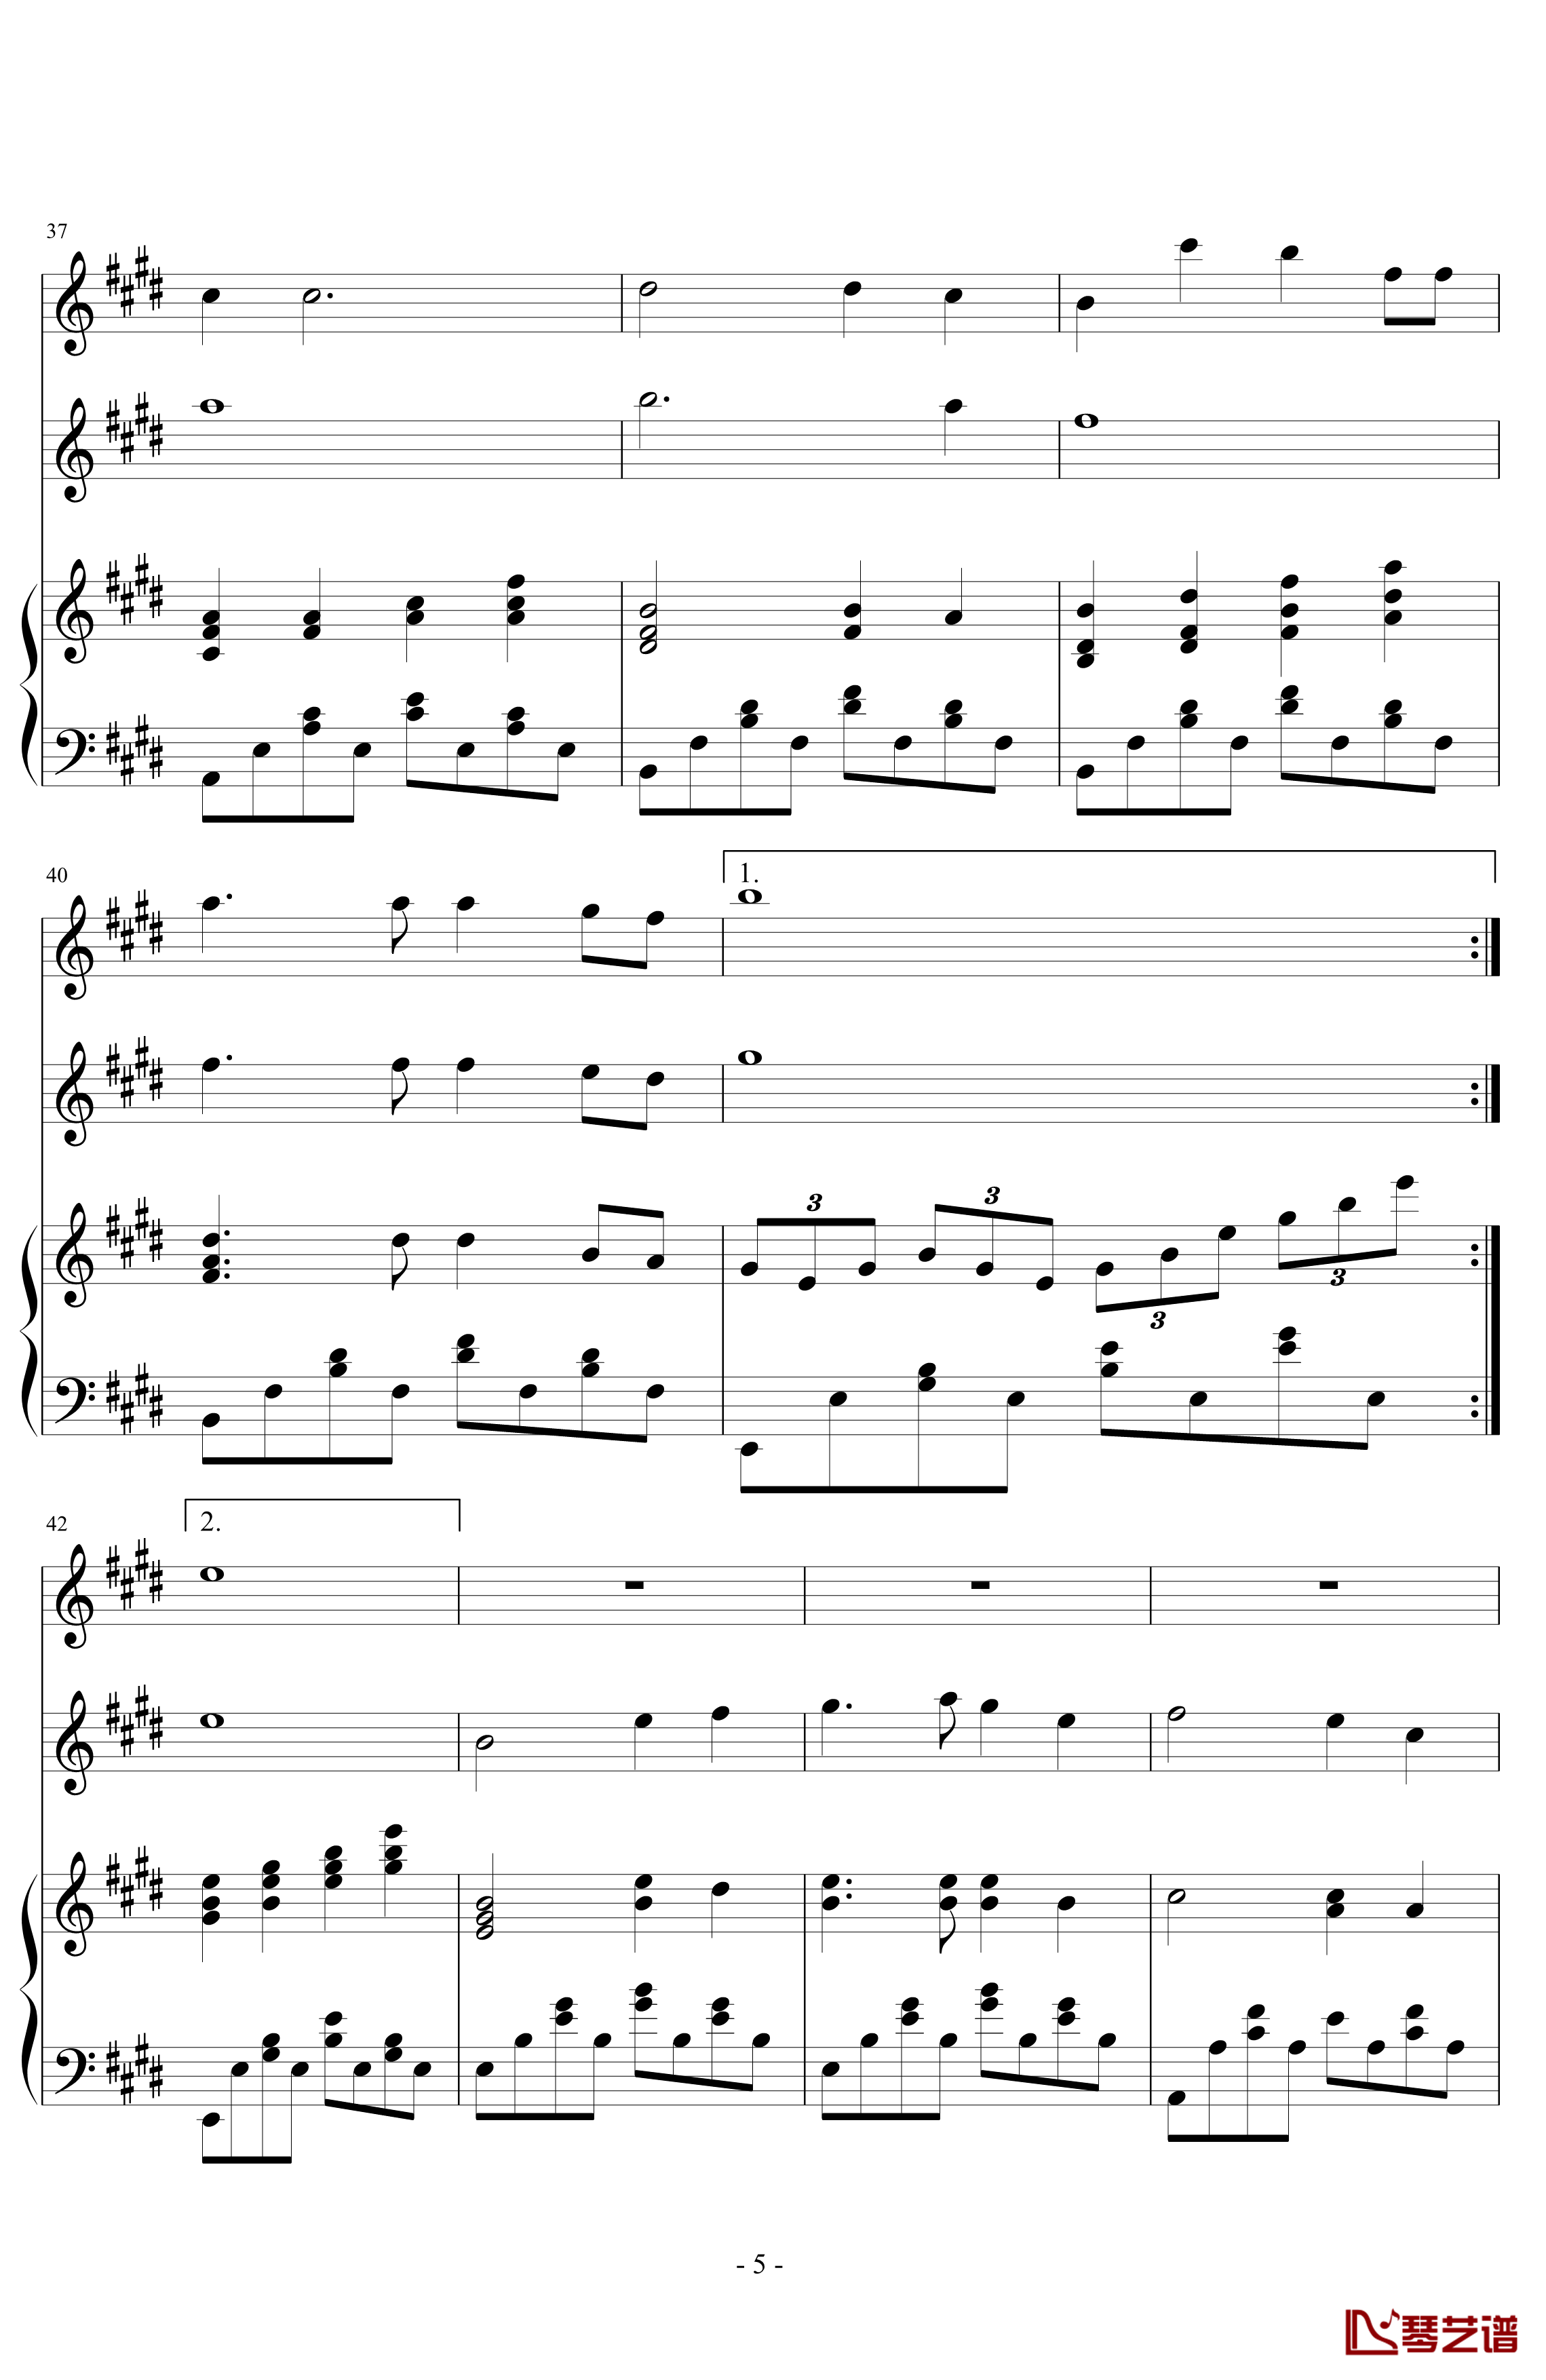 同一首歌钢琴谱-小型伴奏谱兼演奏谱-毛阿敏5